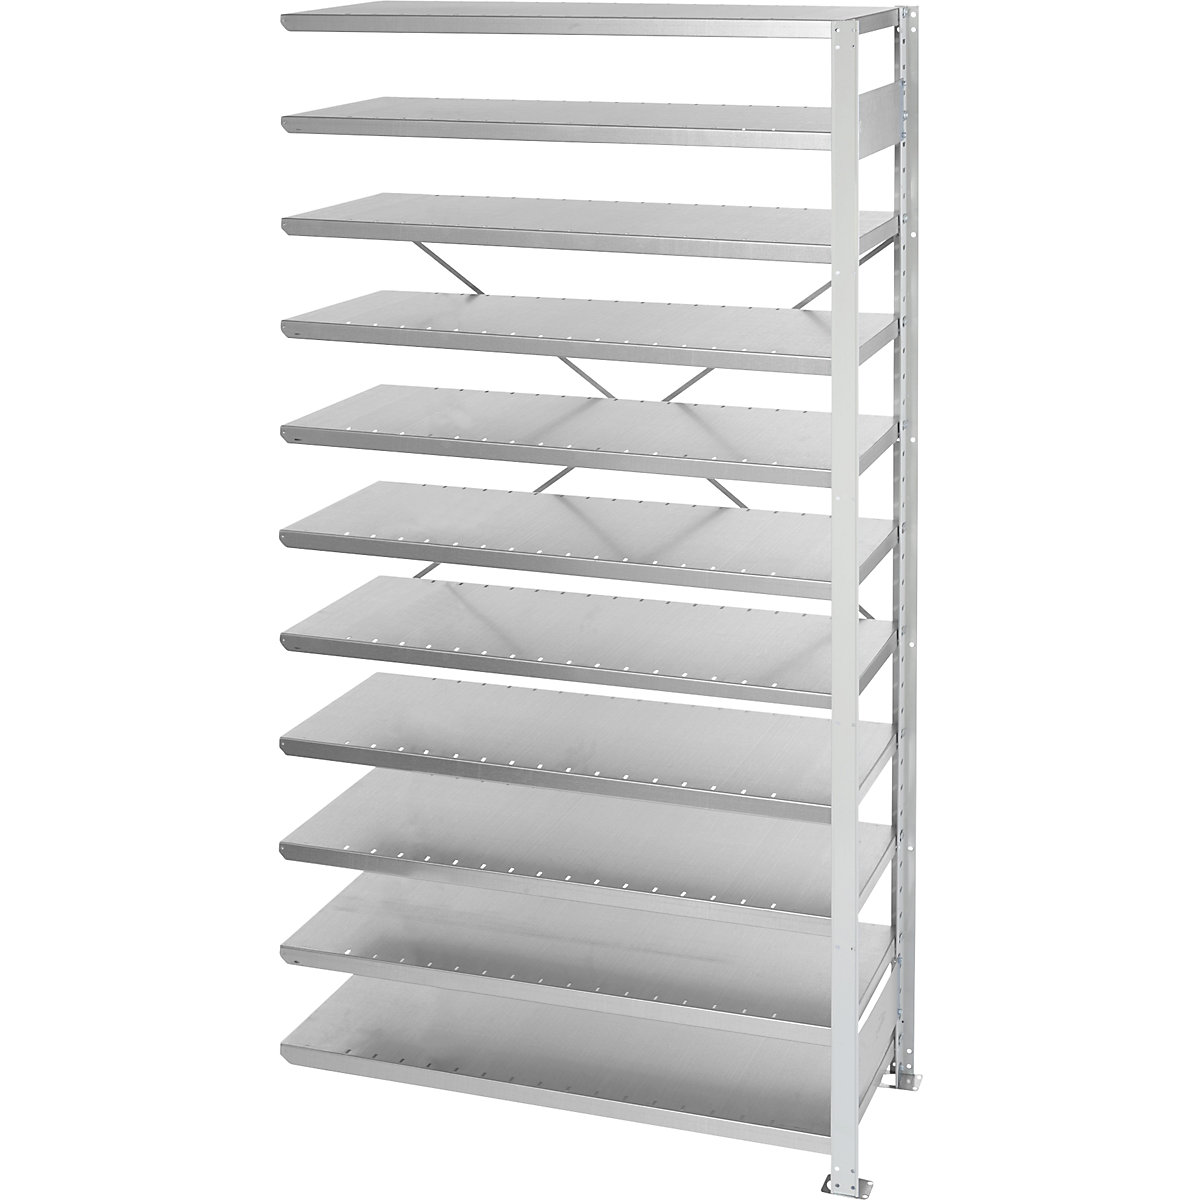 Boltless shelving unit for shelf bins - STEMO